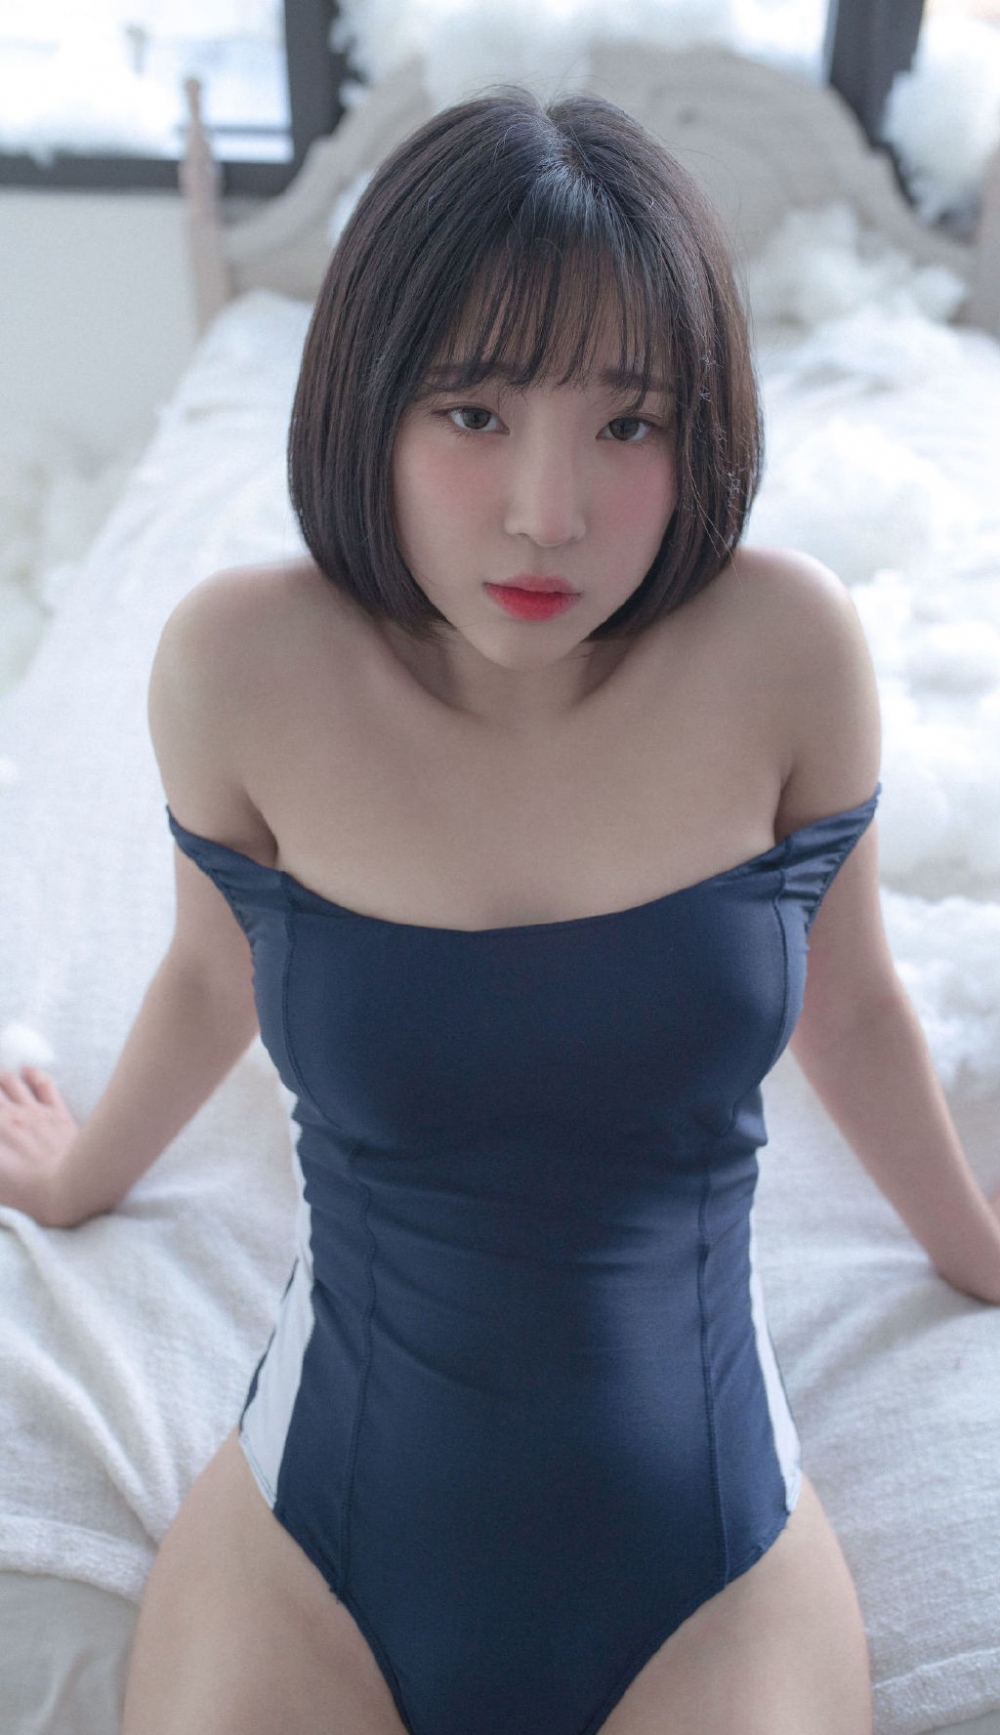 日本比基尼短发美女肥臀肉体摄影你懂的图片